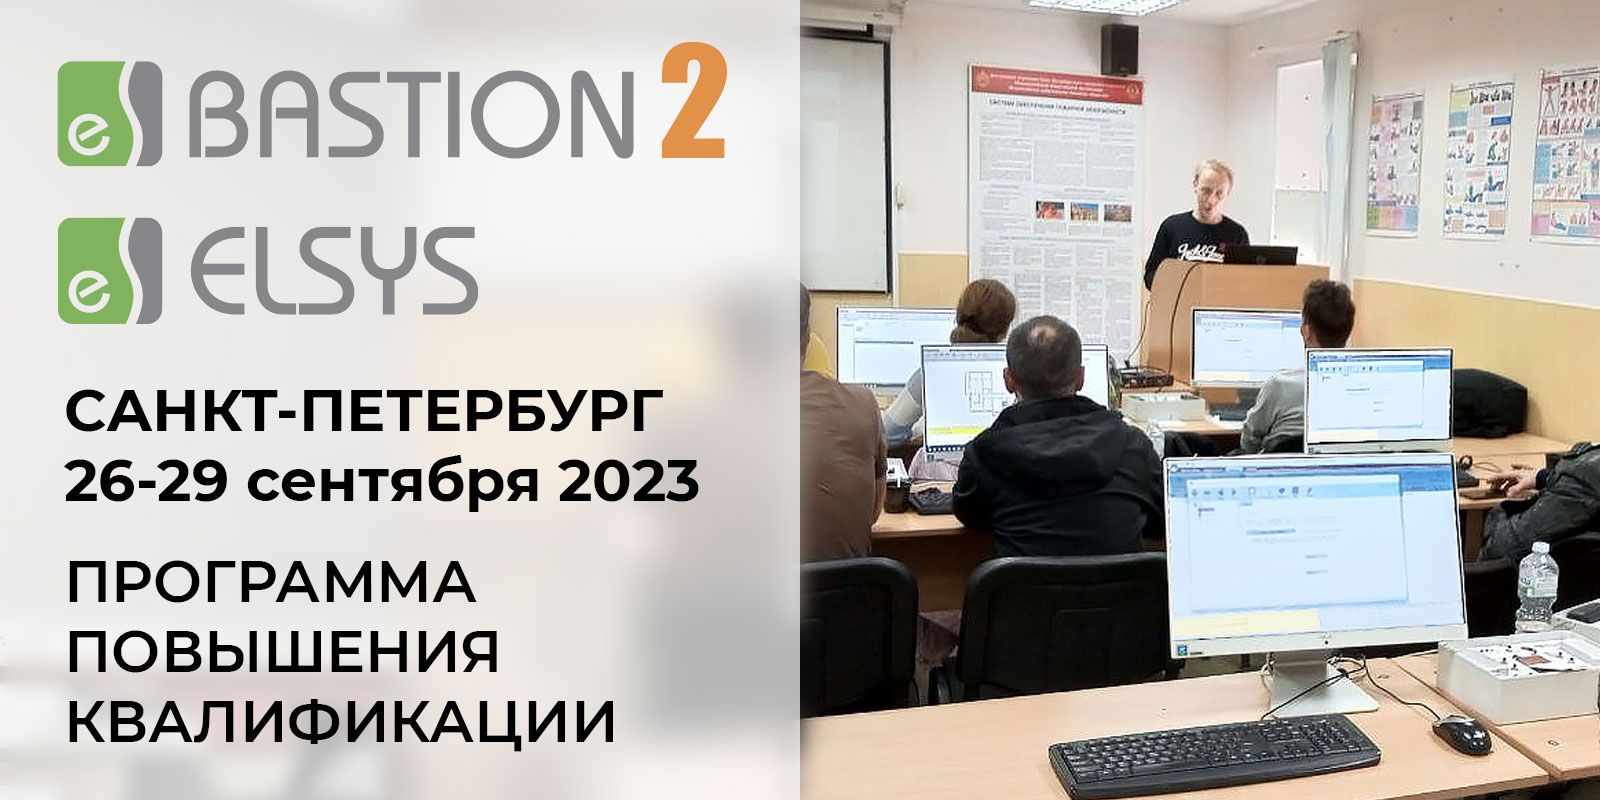 Прошел курс по программе повышения квалификации АПК Бастион 2 и СКУД Elsys 26-29 сентября 2023, г. Санкт-Петербург